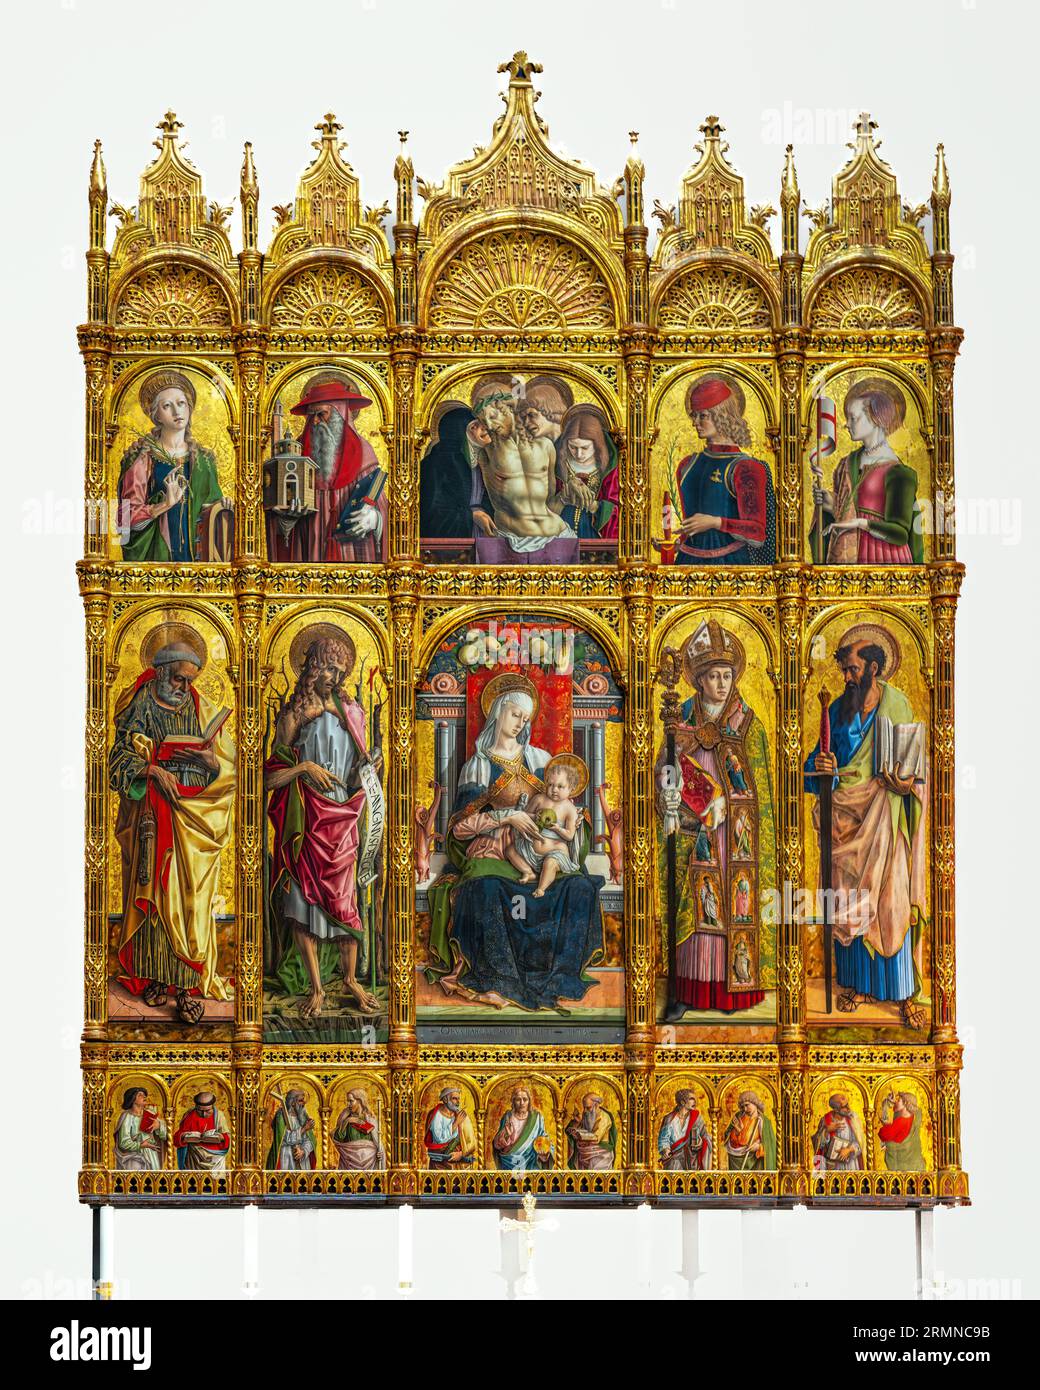 Das Polyptychon von Sant'Emidio von Carlo Crivelli, Tafeln in einem gotischen Rahmen. Kathedrale von Sant'Emidio. Ascoli Piceno Marche Italien Stockfoto